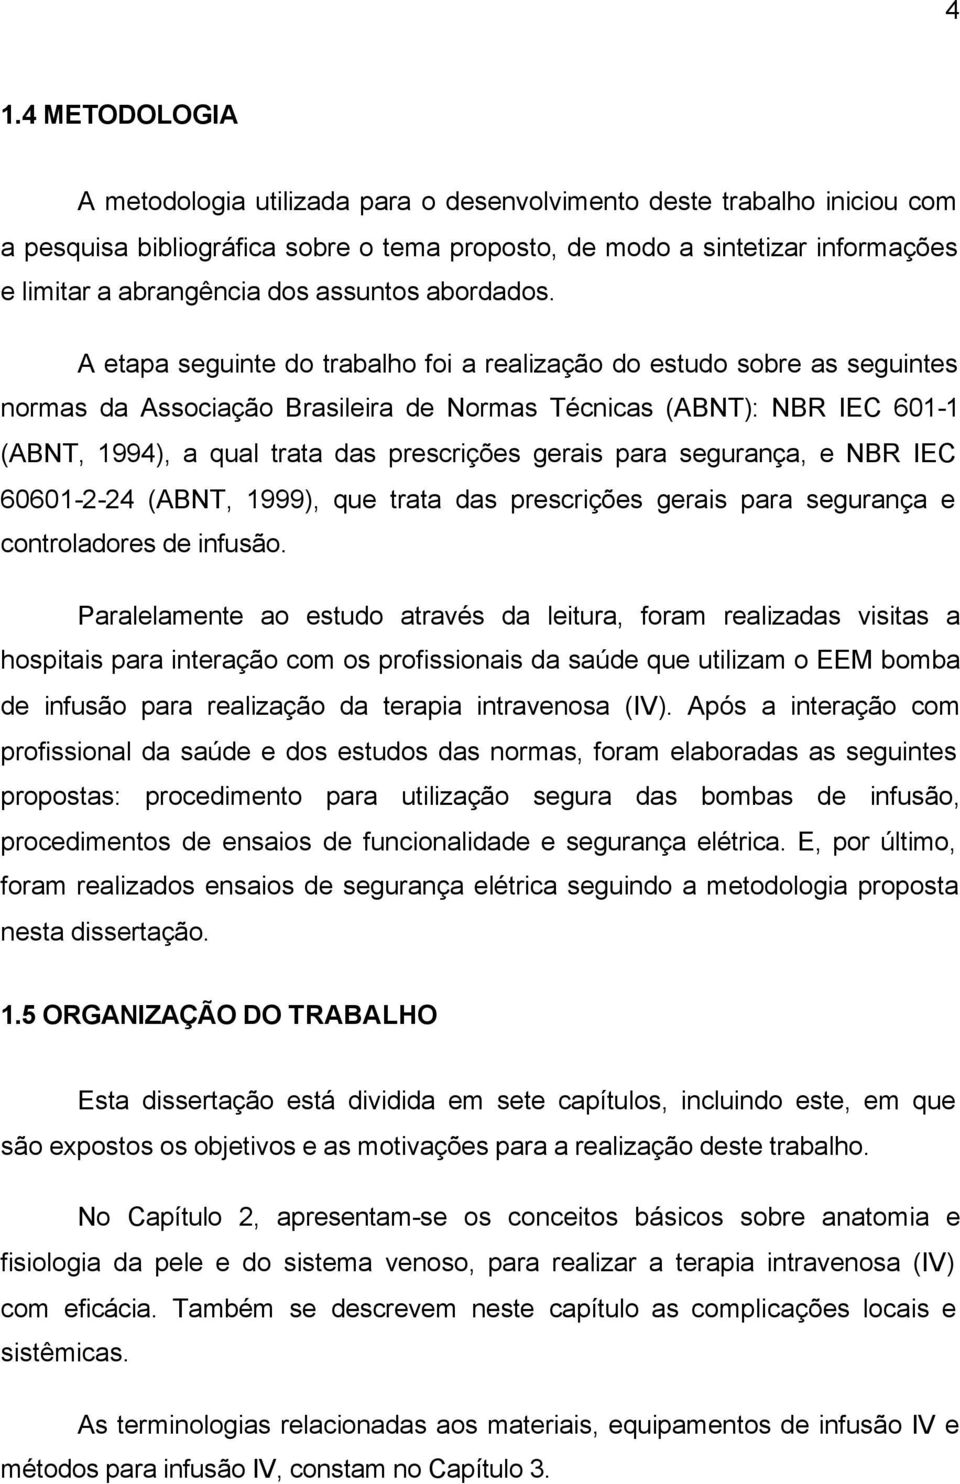 A etapa seguinte do trabalho foi a realização do estudo sobre as seguintes normas da Associação Brasileira de Normas Técnicas (ABNT): NBR IEC 601-1 (ABNT, 1994), a qual trata das prescrições gerais